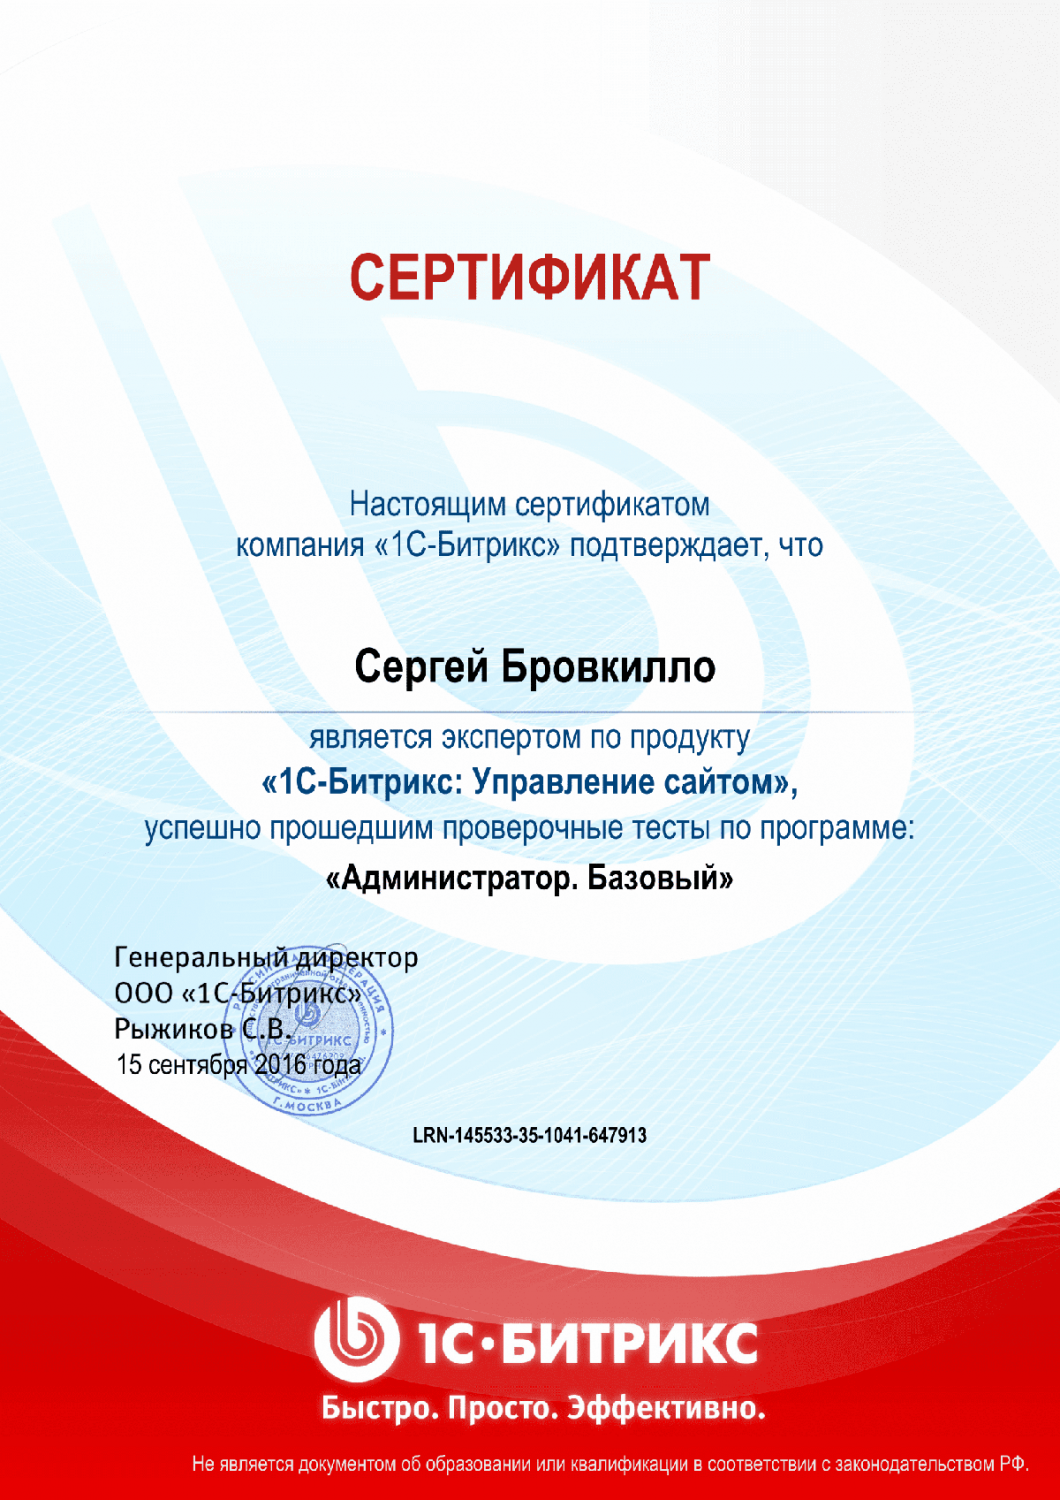 Сертификат эксперта по программе "Администратор. Базовый" в Кемерово